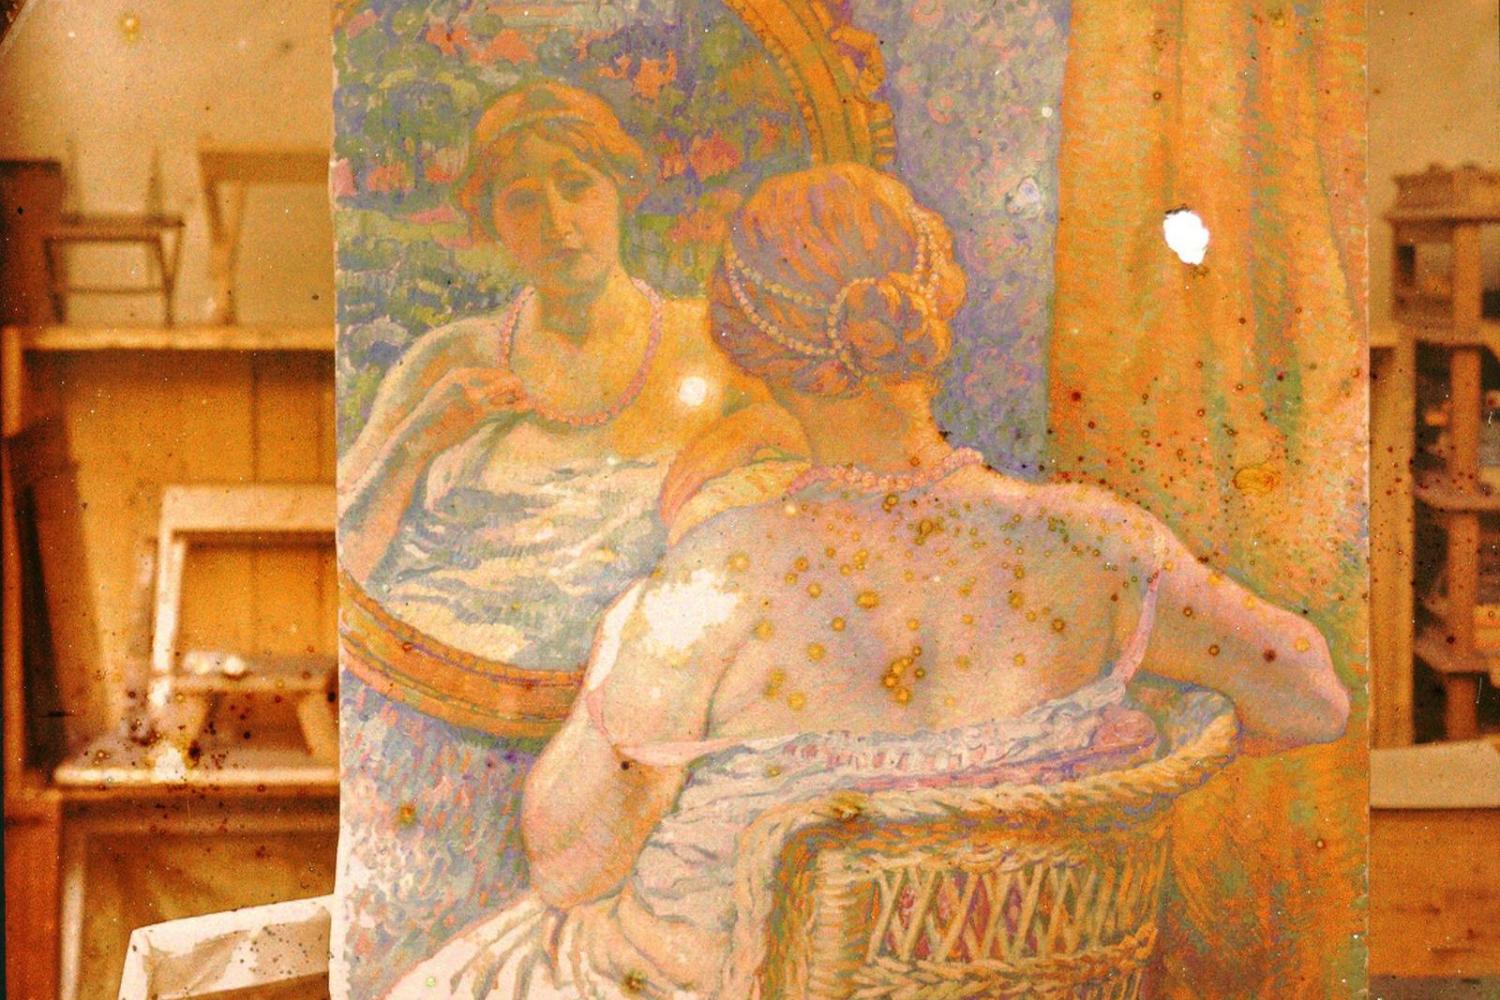 Tableau dans un atelier : Jeune femme assise devant un miroir – Auteur inconnu - Vers 1920 - BnF, département des Estampes et de la photographie